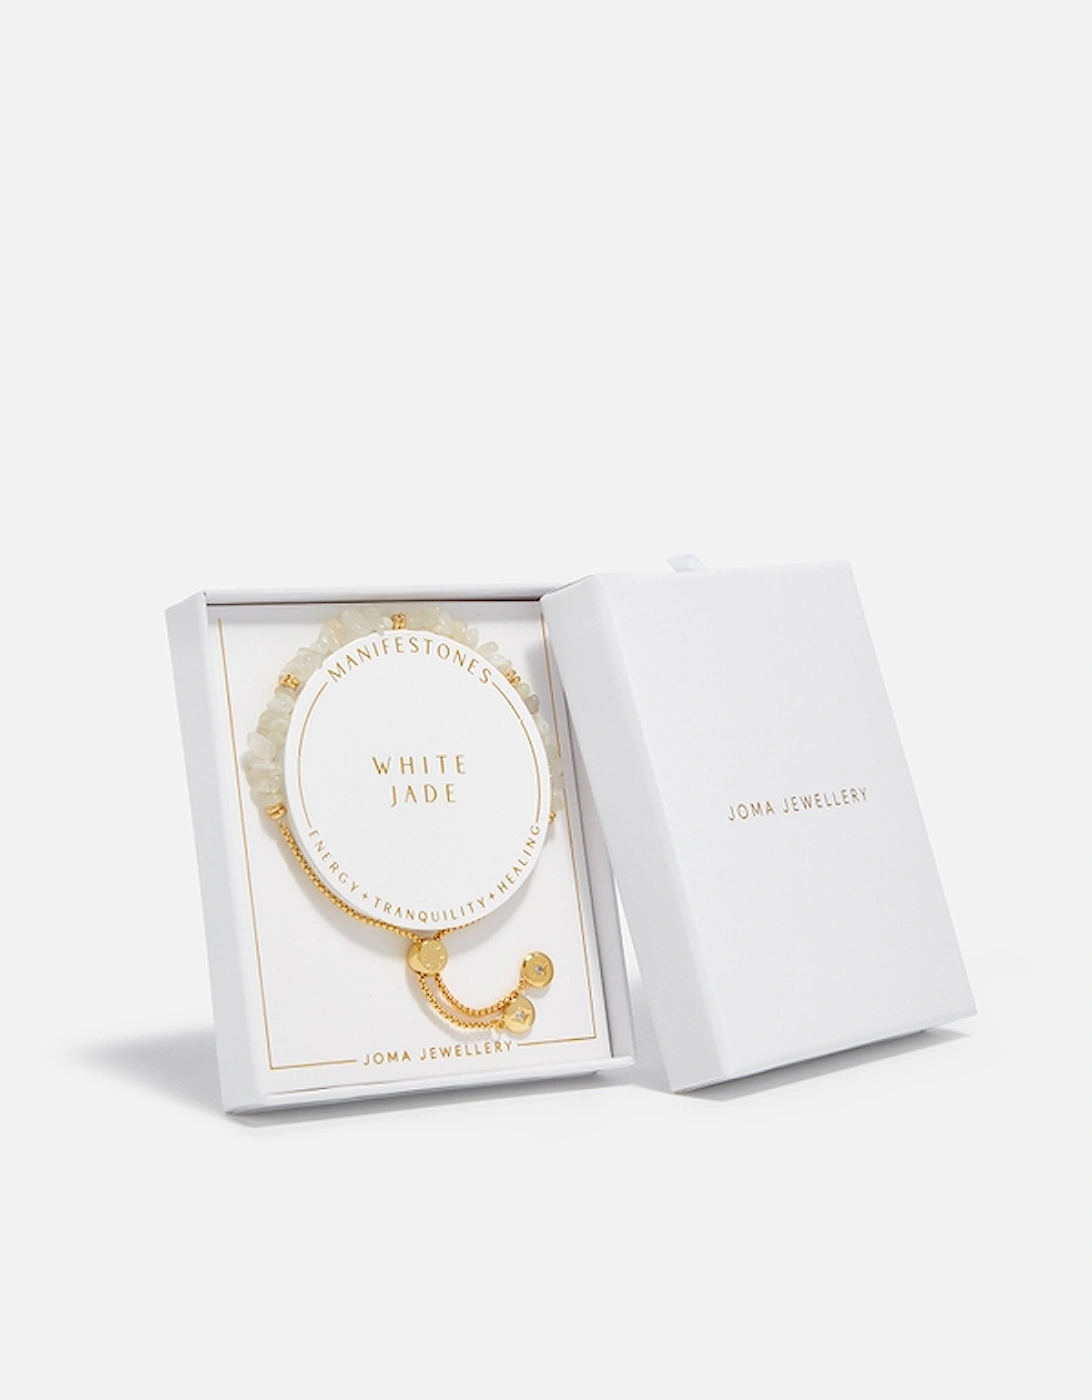 Manifestones White Jade Luck & Prosperity Gold-Plated Bracelet, 2 of 1